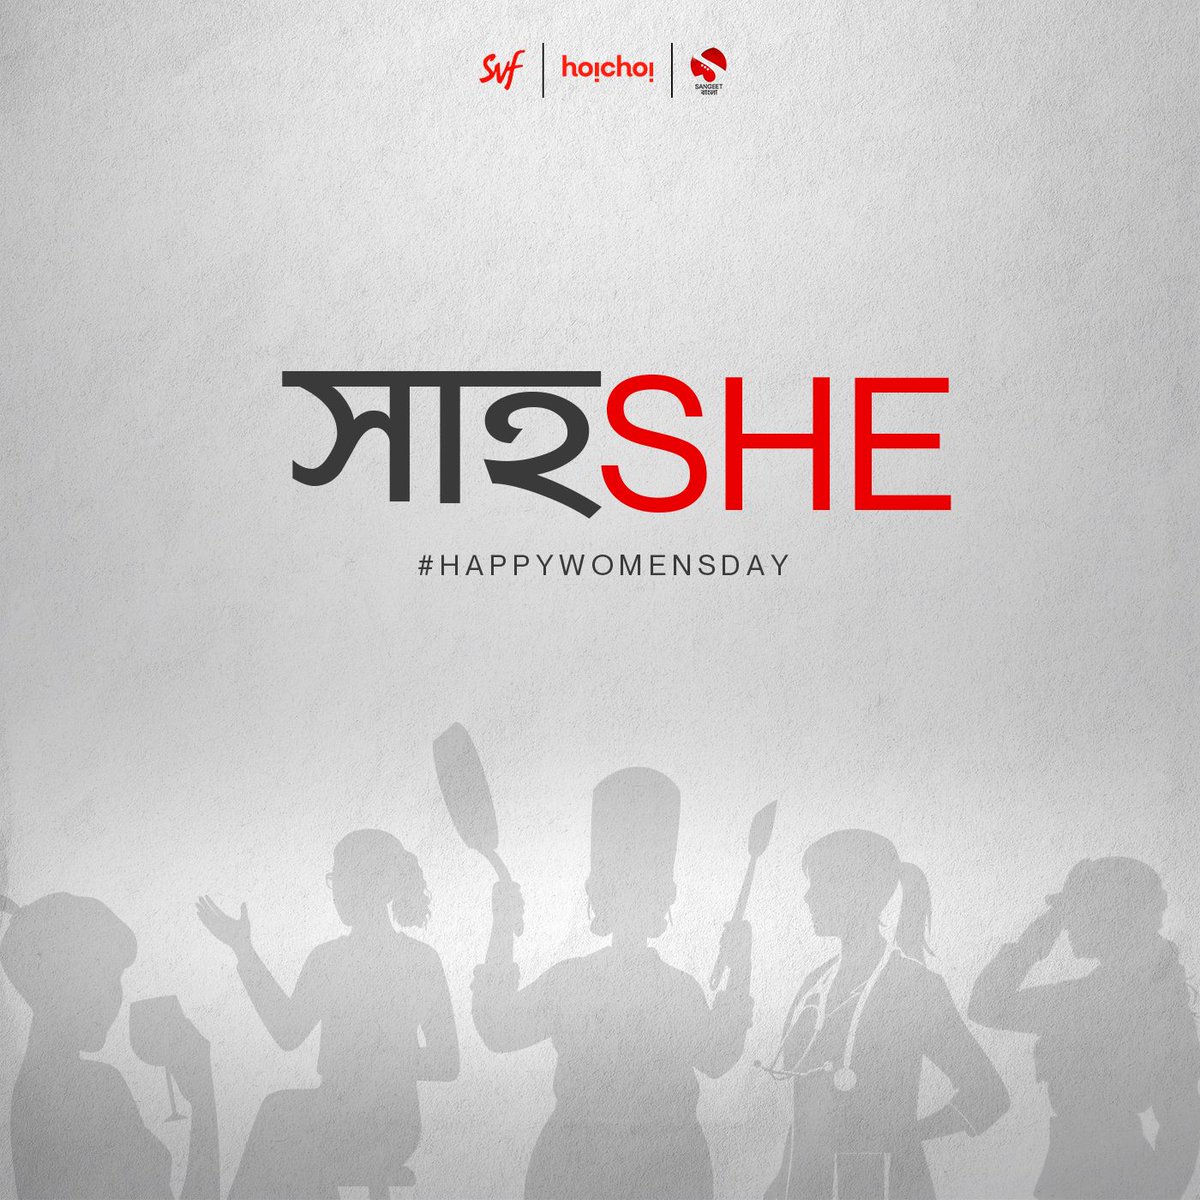 আটকে থেকো না ৮-এ! #HappyWomensDay #womensday #InternationalWomensDay #SangeetBangla